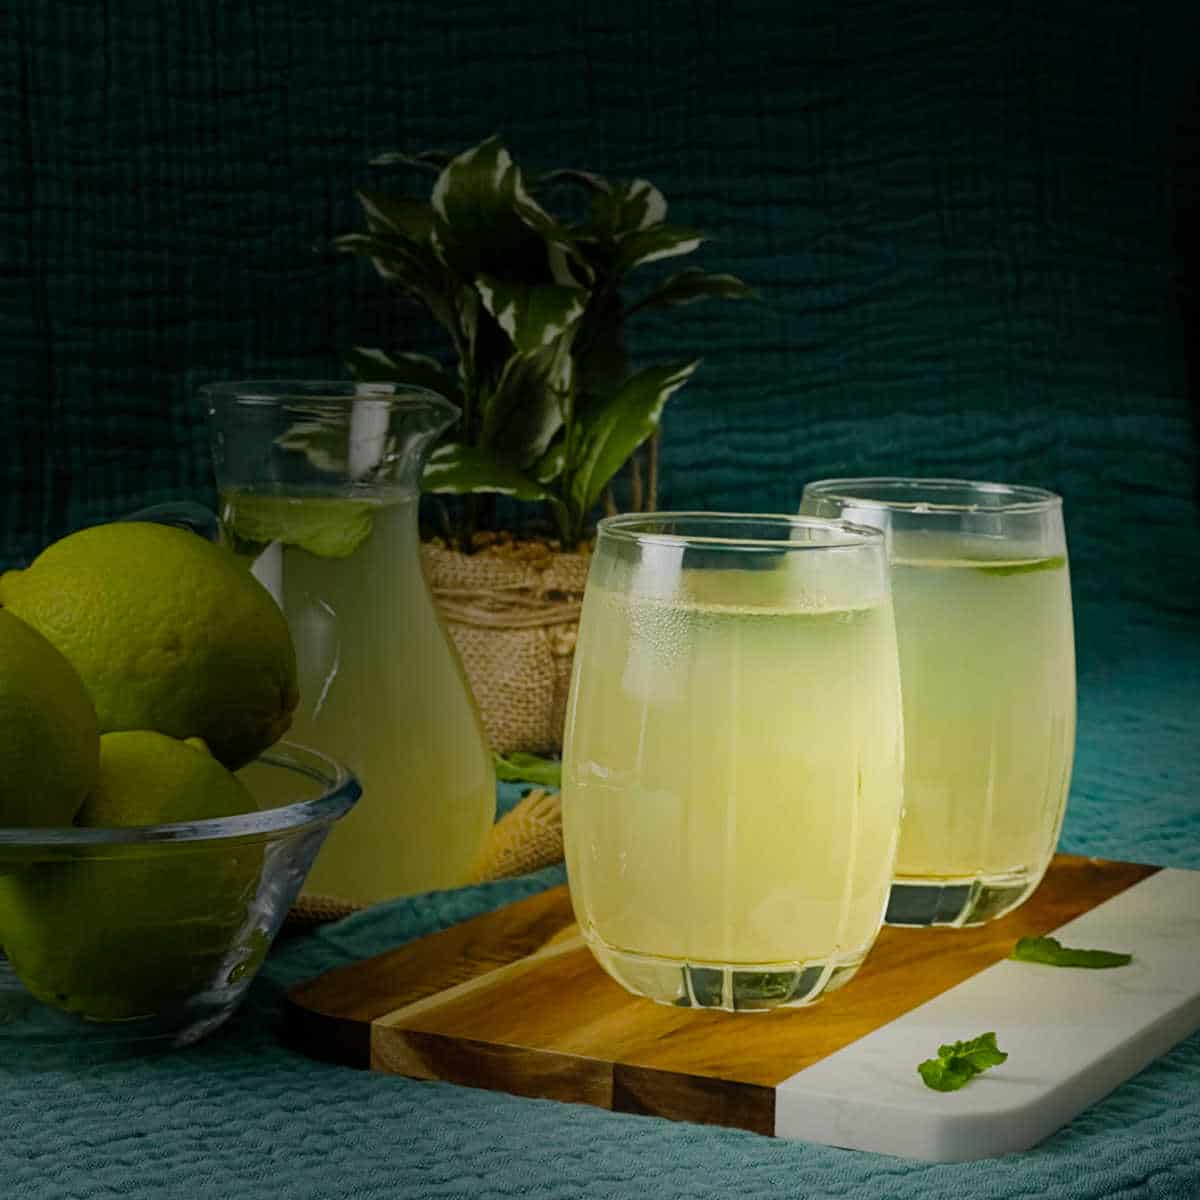 Lemon Shikangvi Nimbu Paani Lemonade